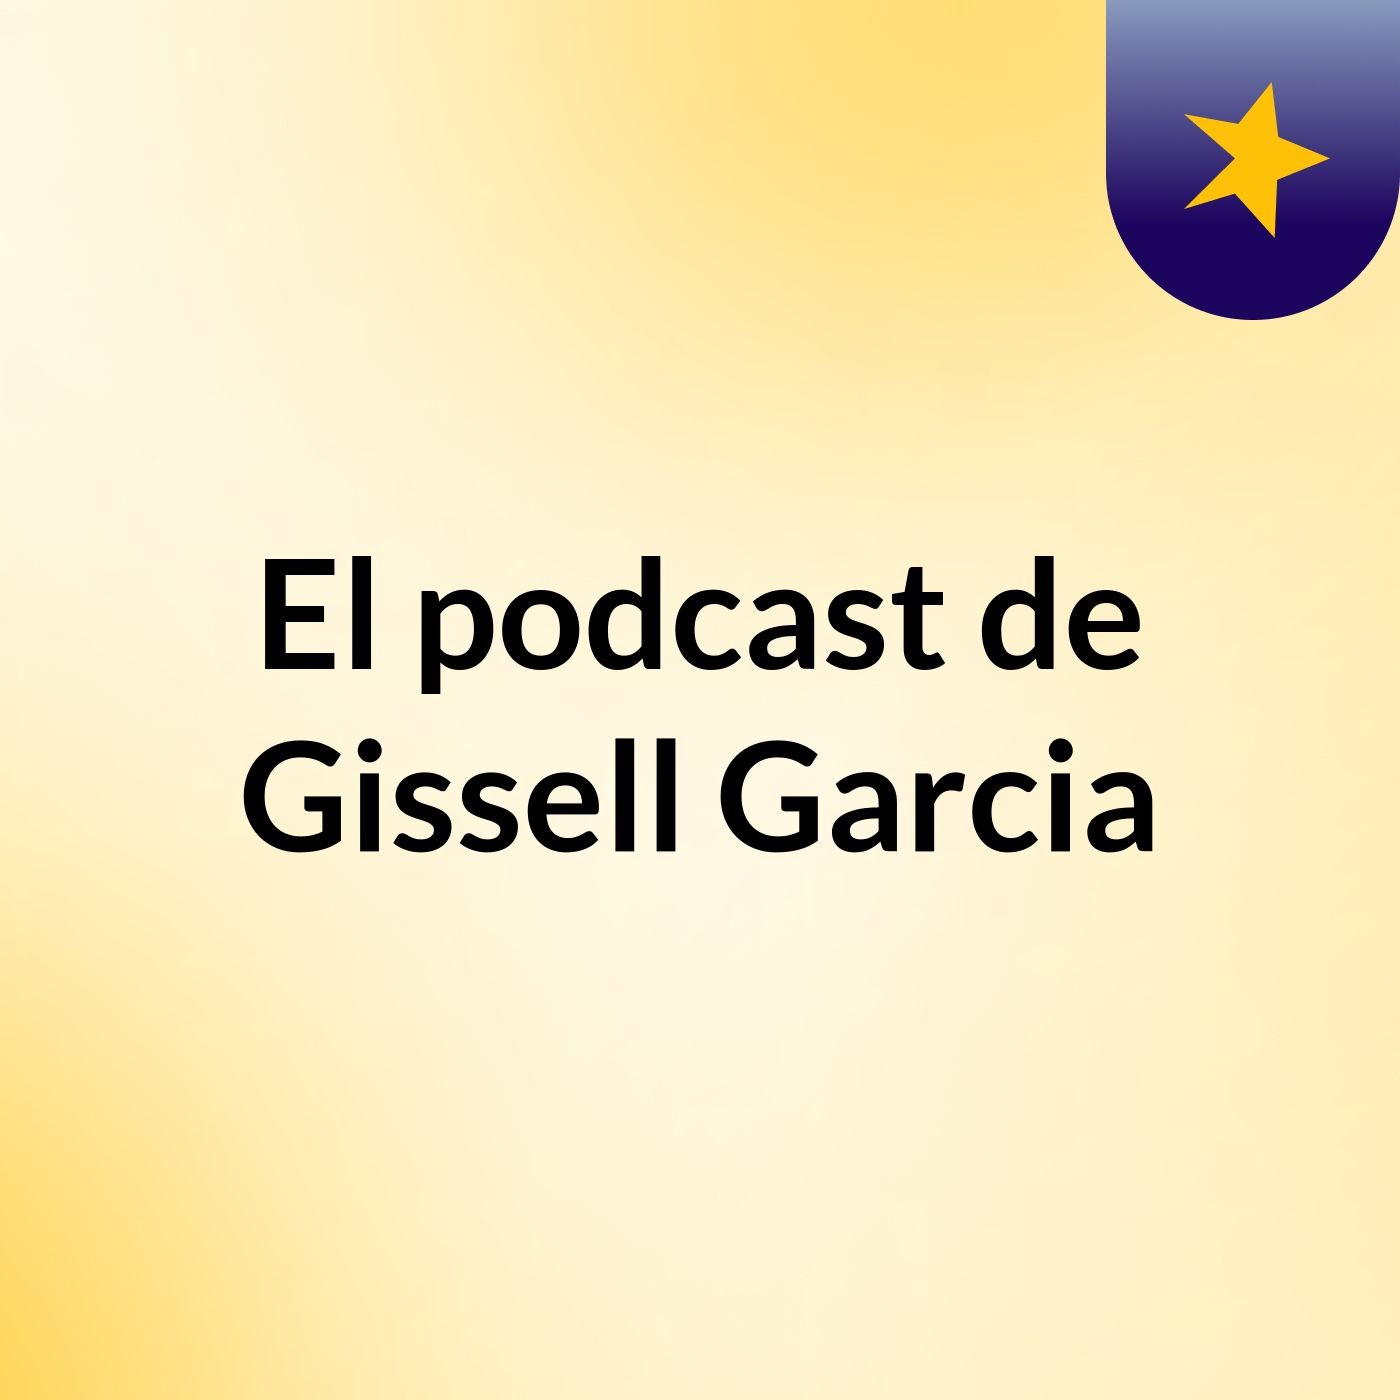 El podcast de Gissell Garcia